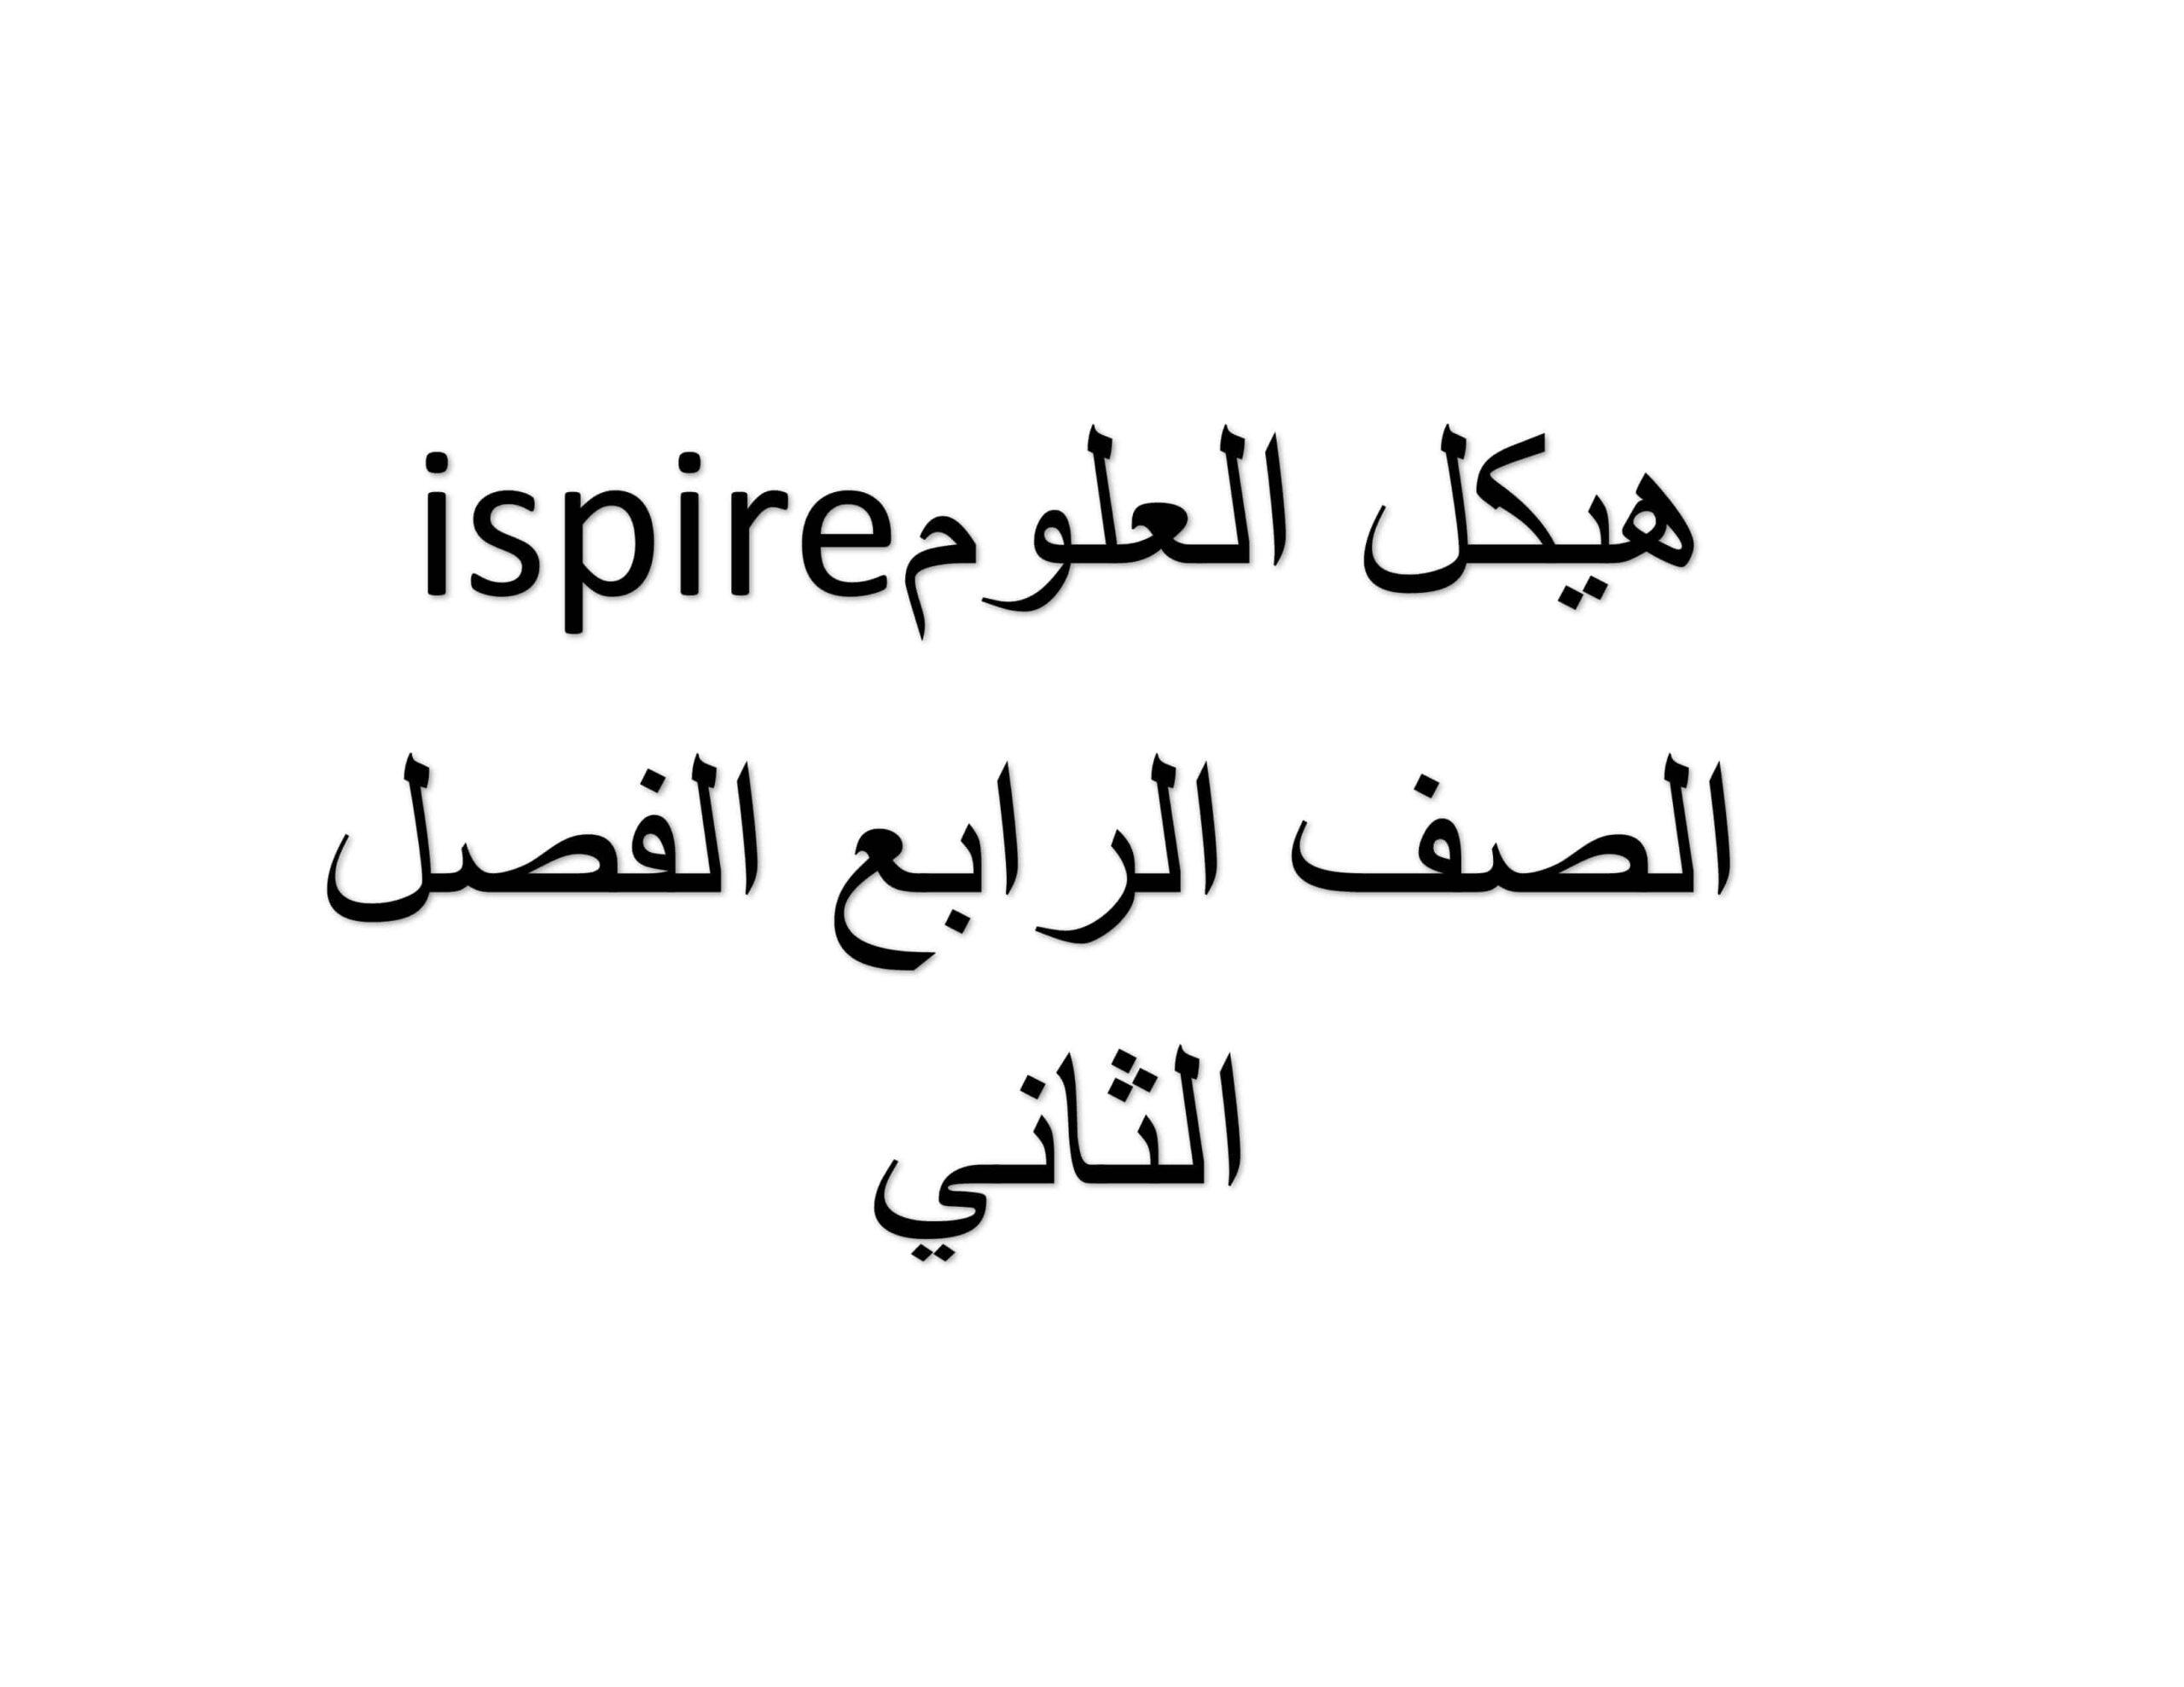 مراجعة صفات الهيكلة مترجمة باللغة العربية العلوم المتكاملة الصف الرابع Inspire